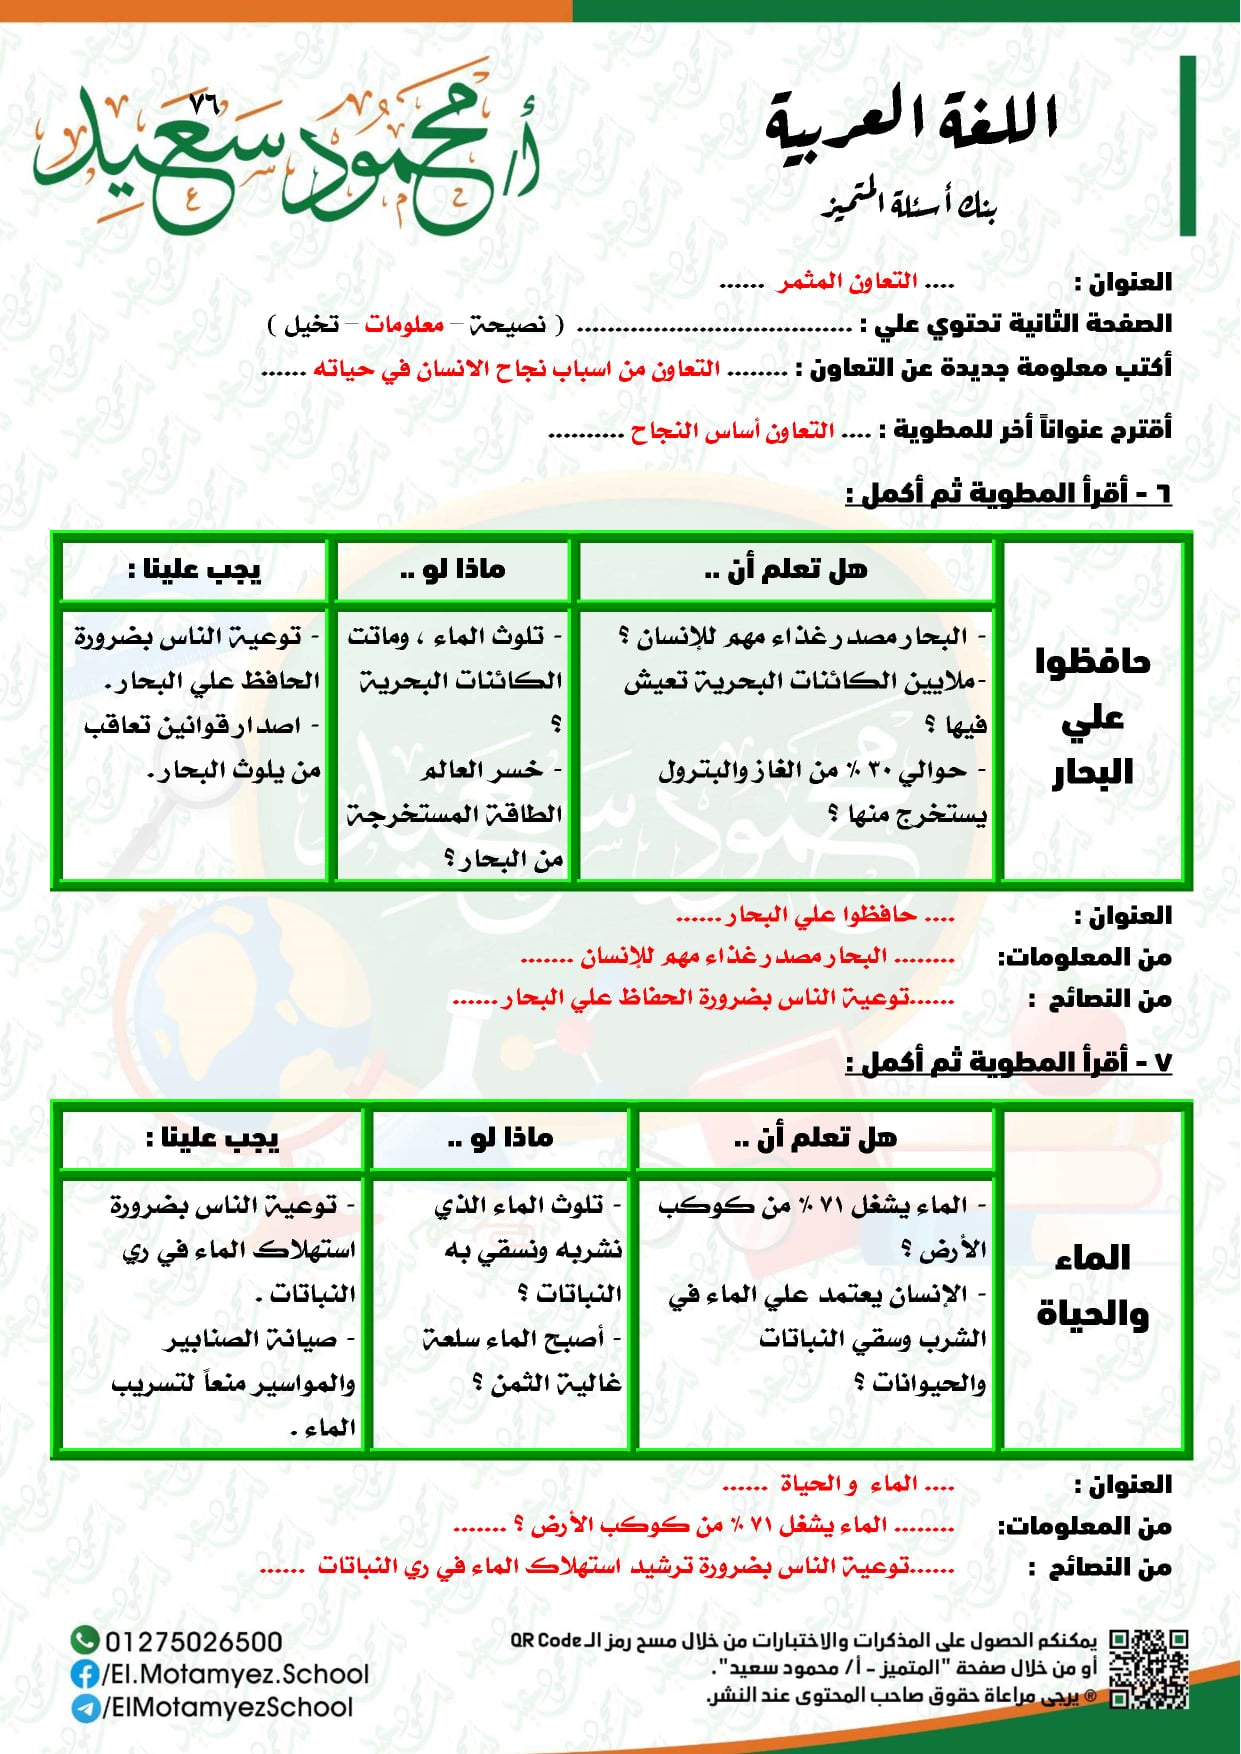 ننشر بالاجابات بنك أسئلة المتميز للصف الرابع الإبتدائي في مادة اللغة العربية الترم الثاني 2022 7